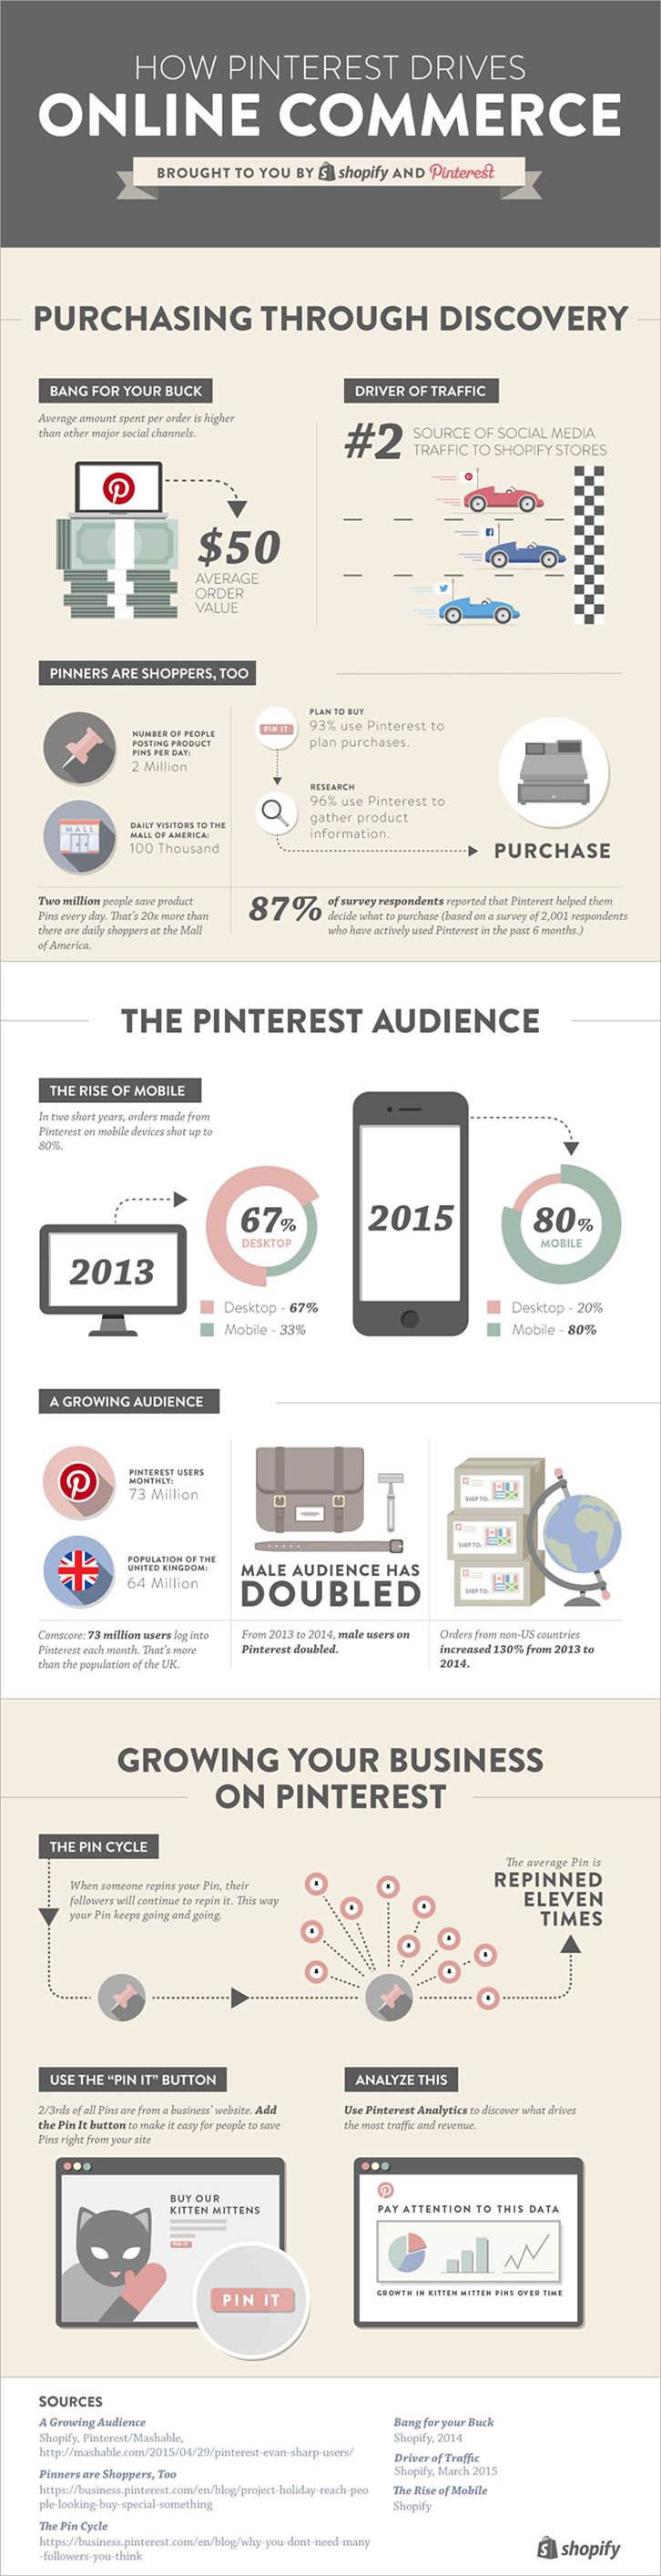 Pinterest induce el proceso de compra